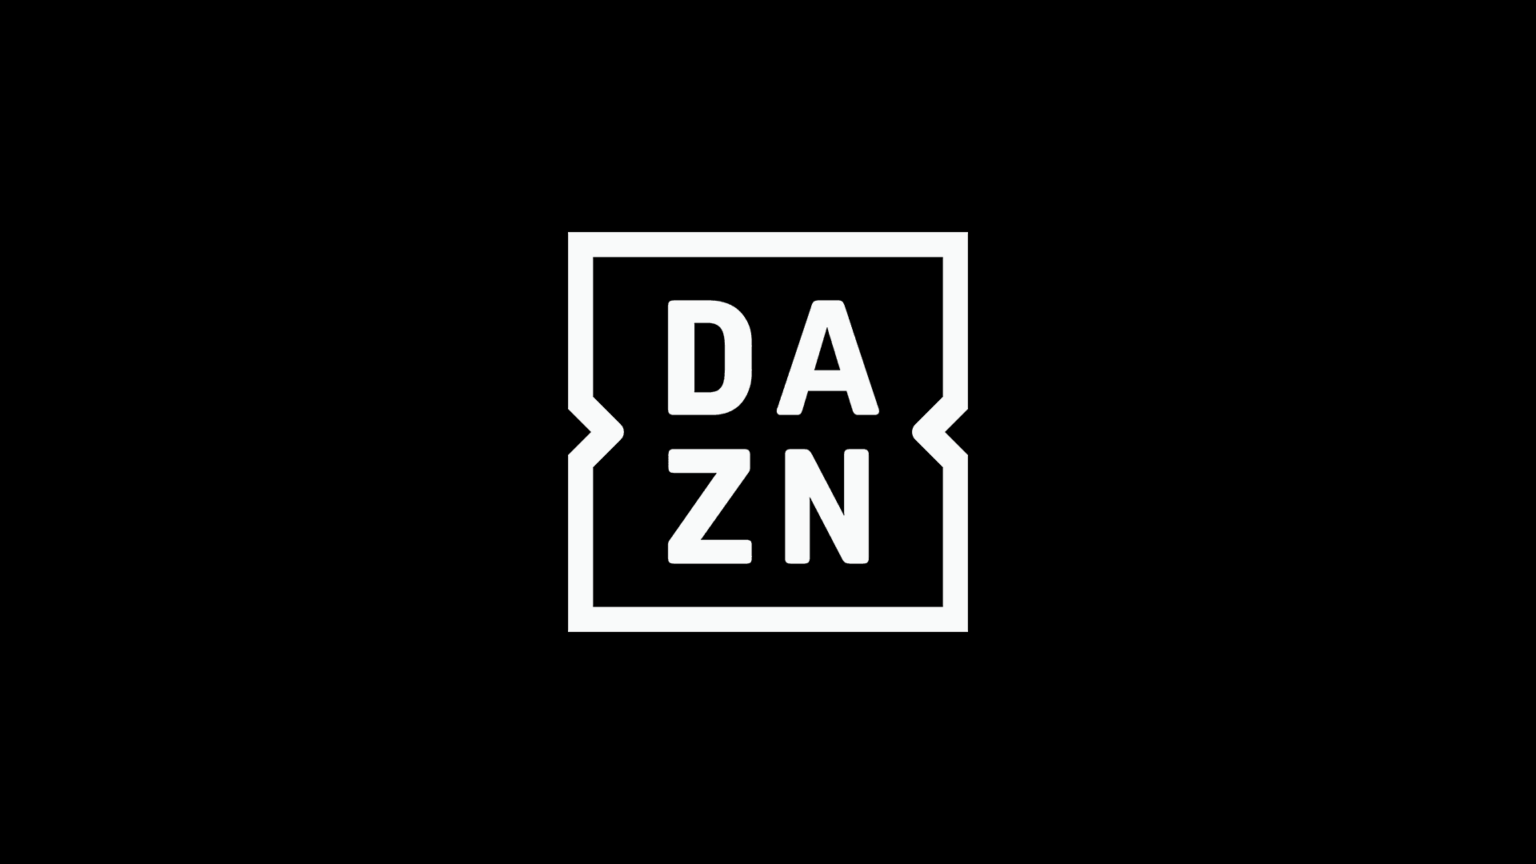 DAZN Logo Kritik zeigt Wirkung